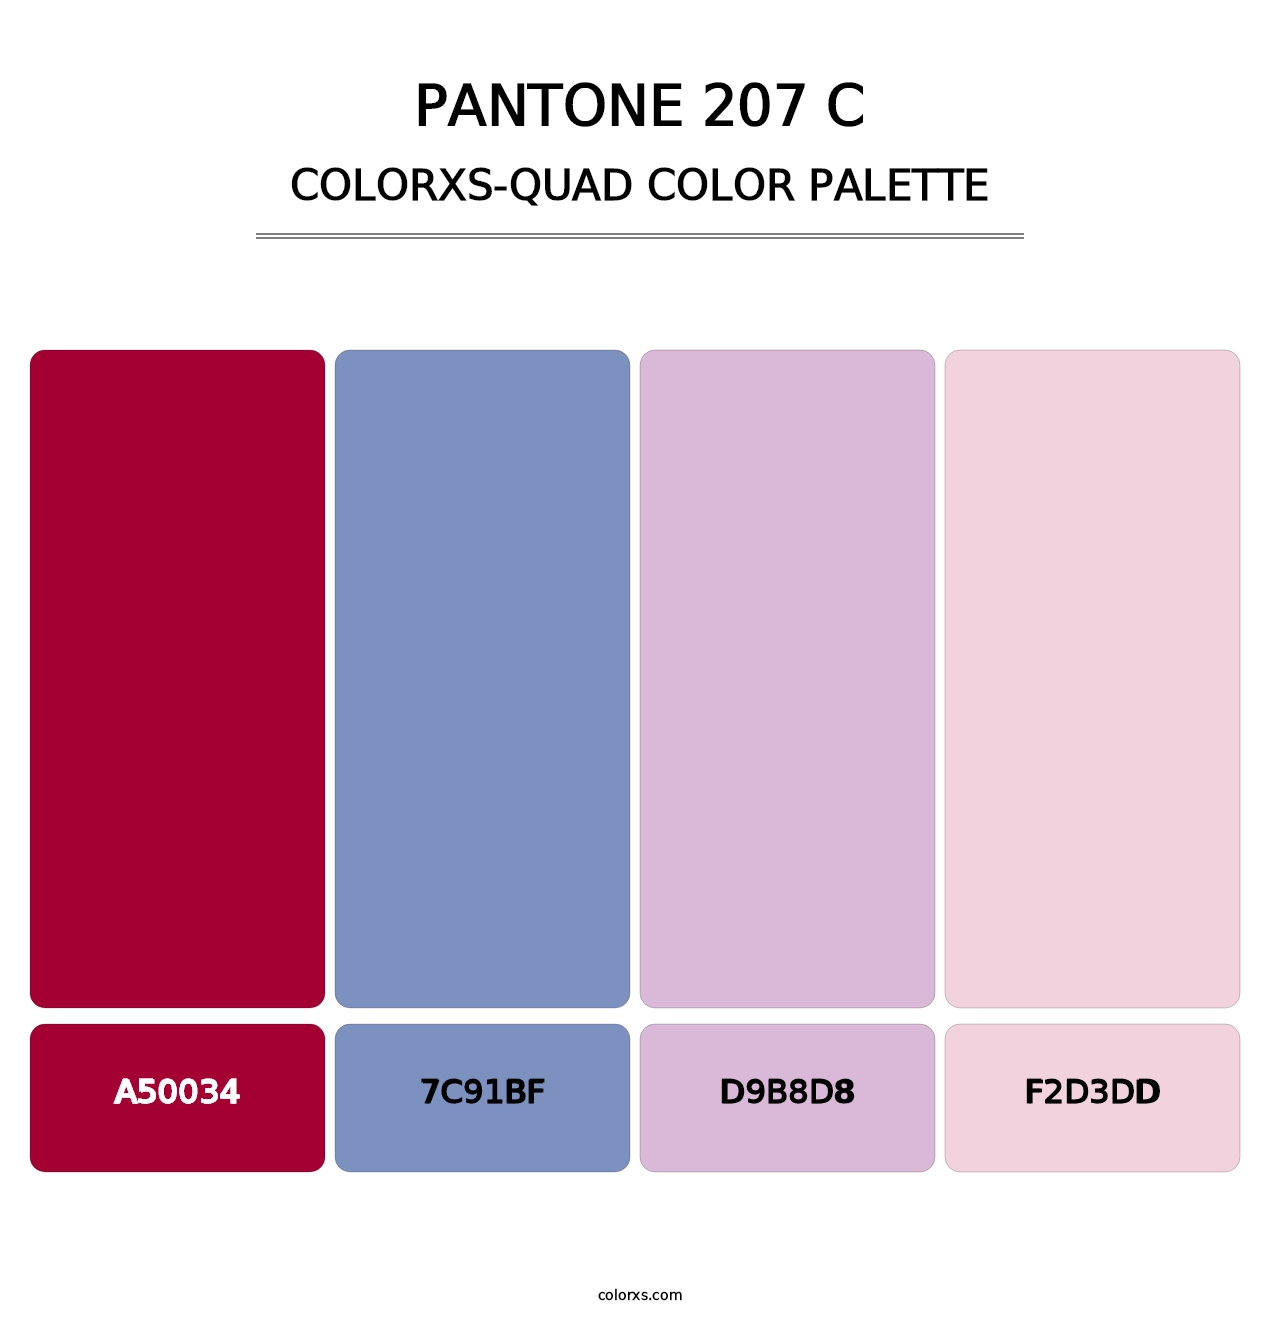 PANTONE 207 C - Colorxs Quad Palette